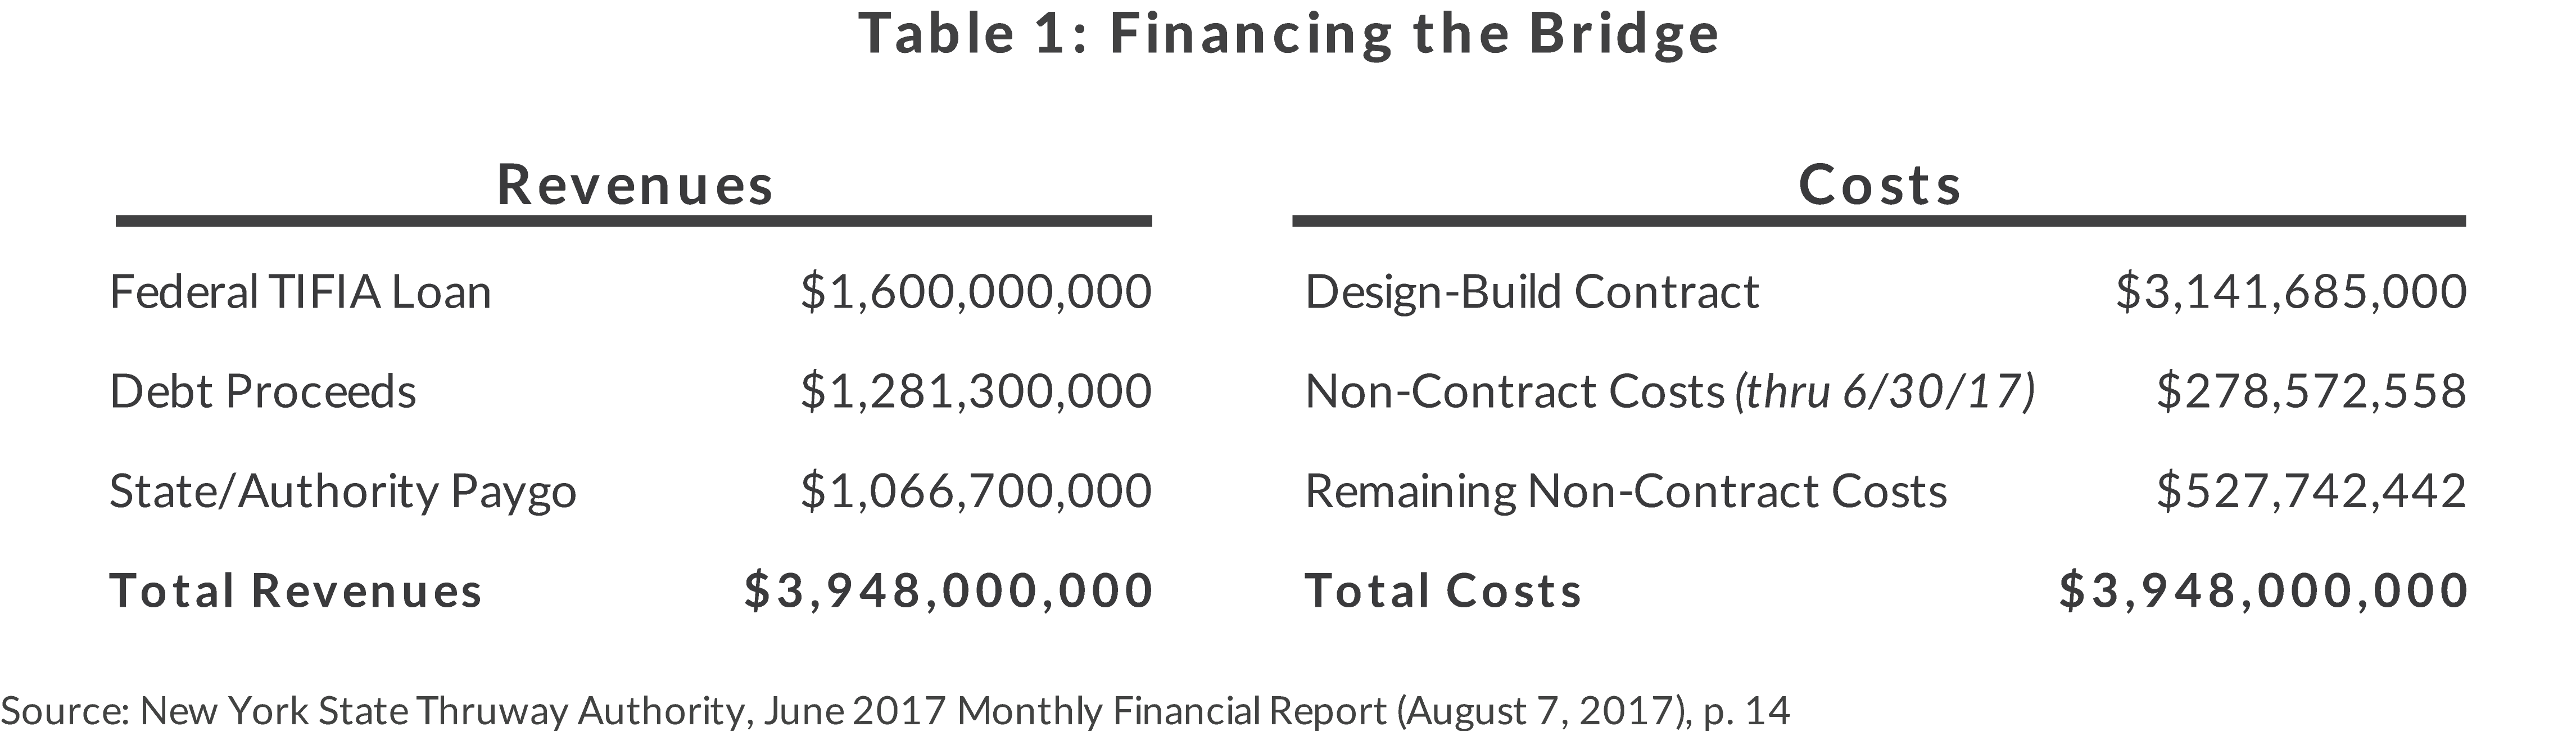 Table 1: Financing the Mario M. Cuomo Bridge